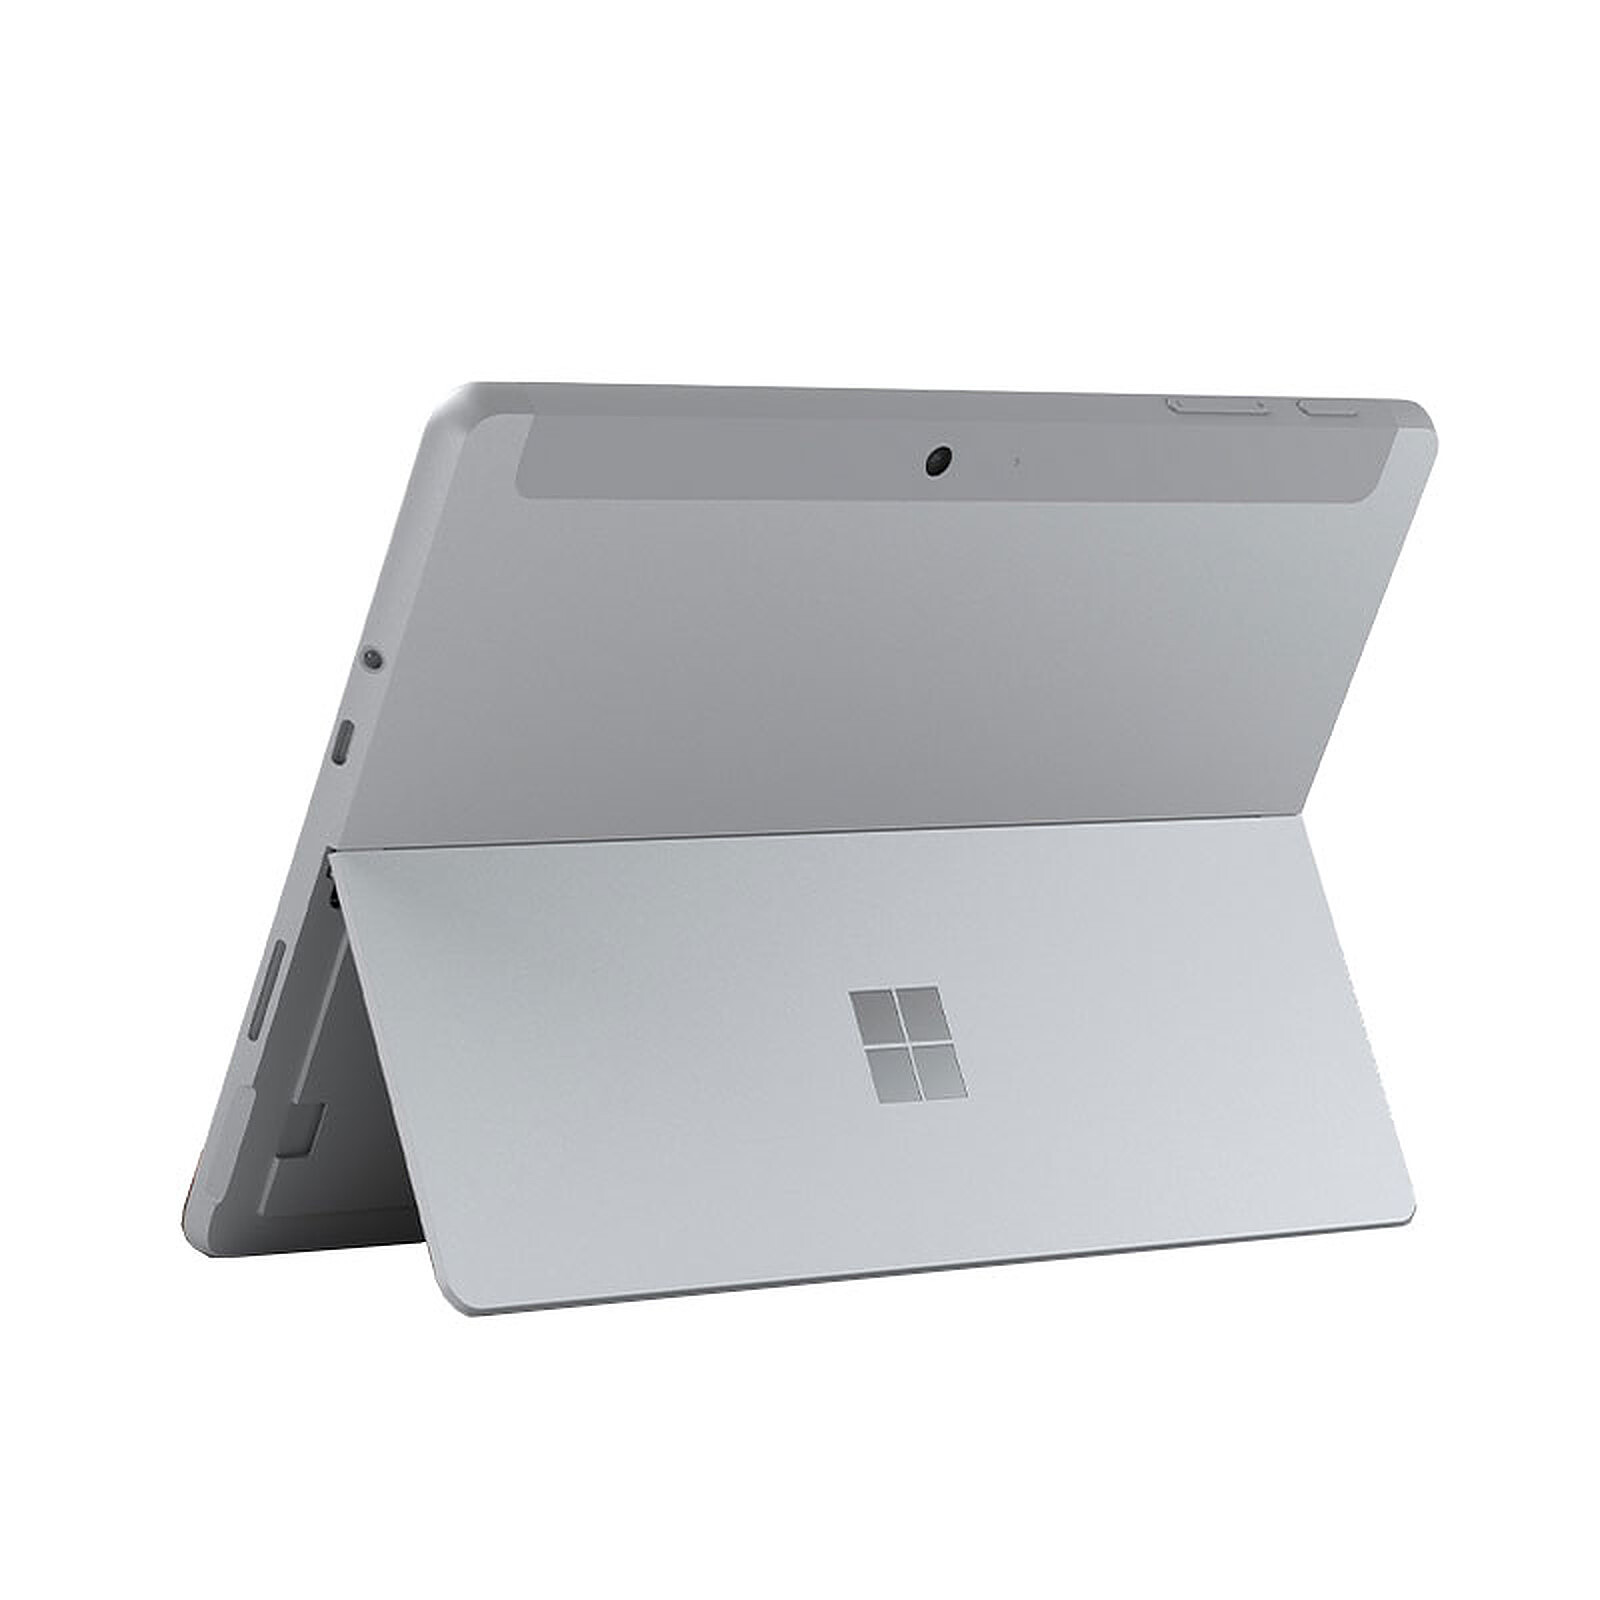 柔らかな質感の 新品マイクロソフト Surface Go 8va00015プラチナ 10.5型 Pentium 8GB 128GB Office  8VA-00015